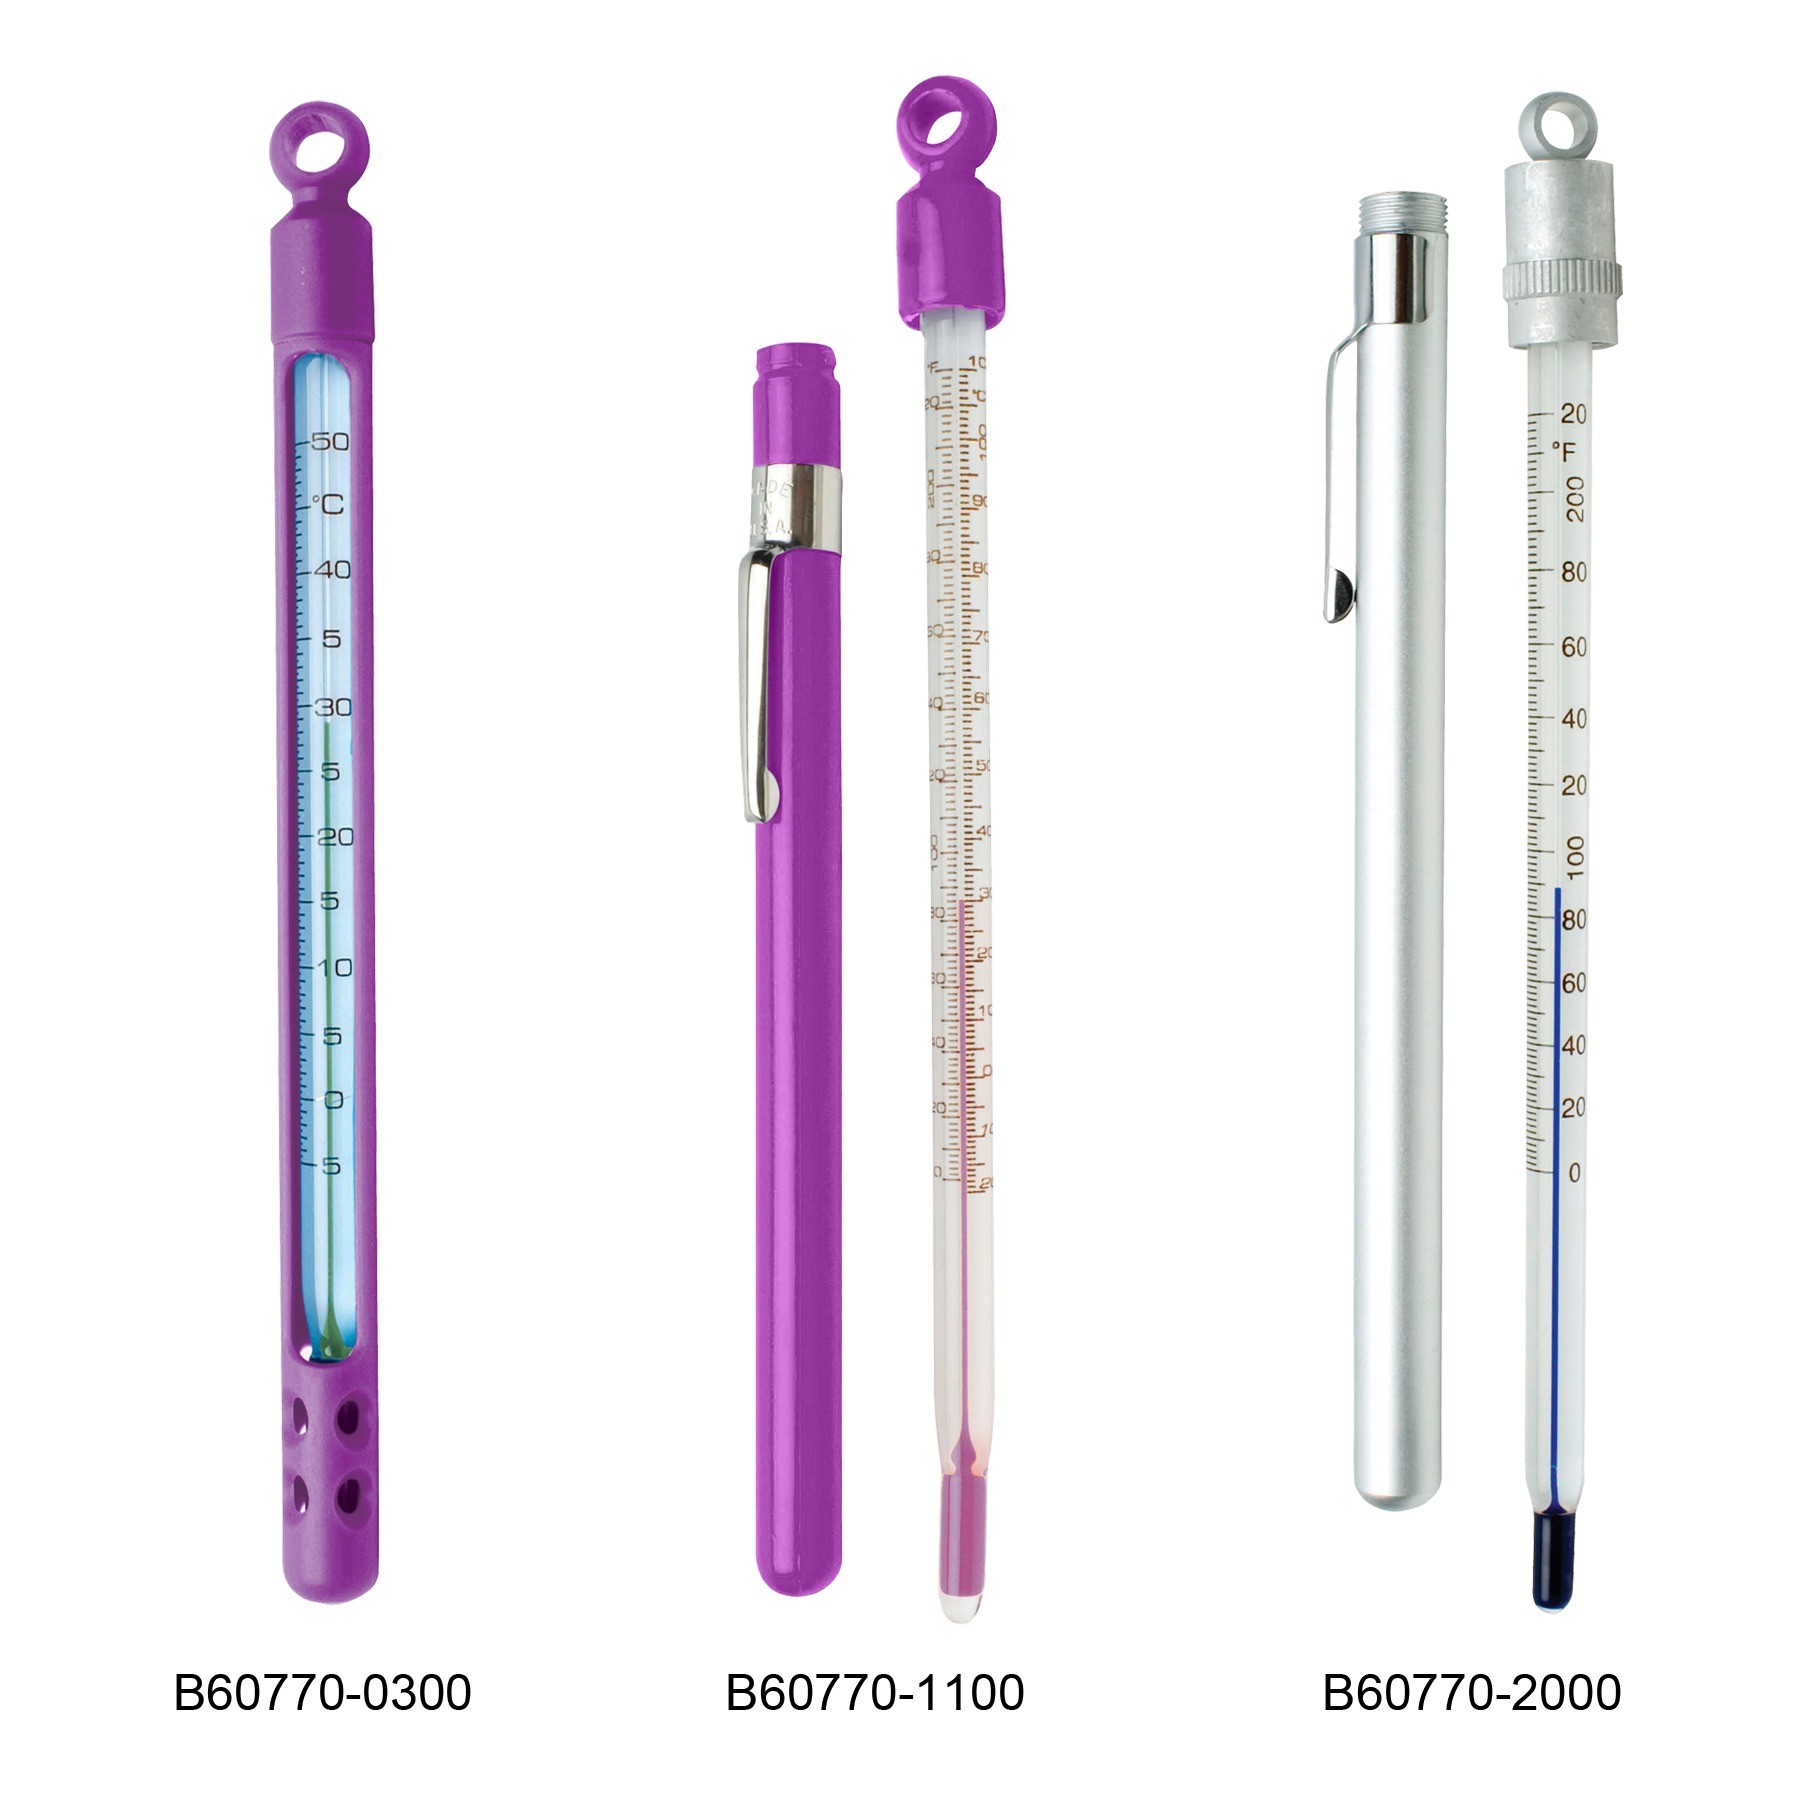 H-B DURAC Plus Pocket Liquid-In-Glass Laboratory Thermometers, Organic Liquid Fill